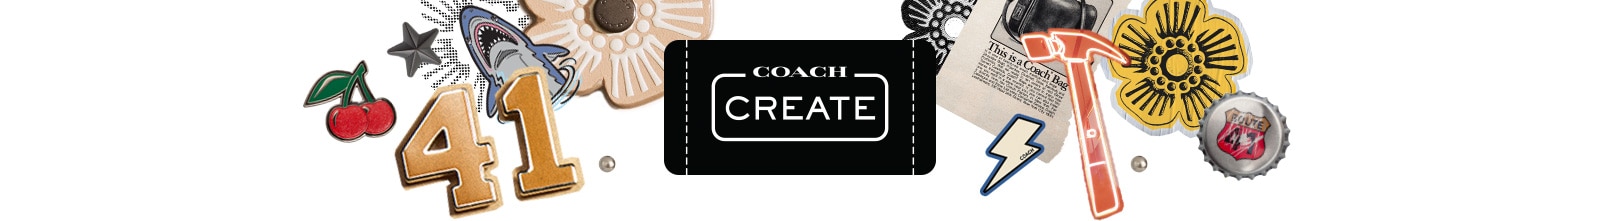 Coach Create